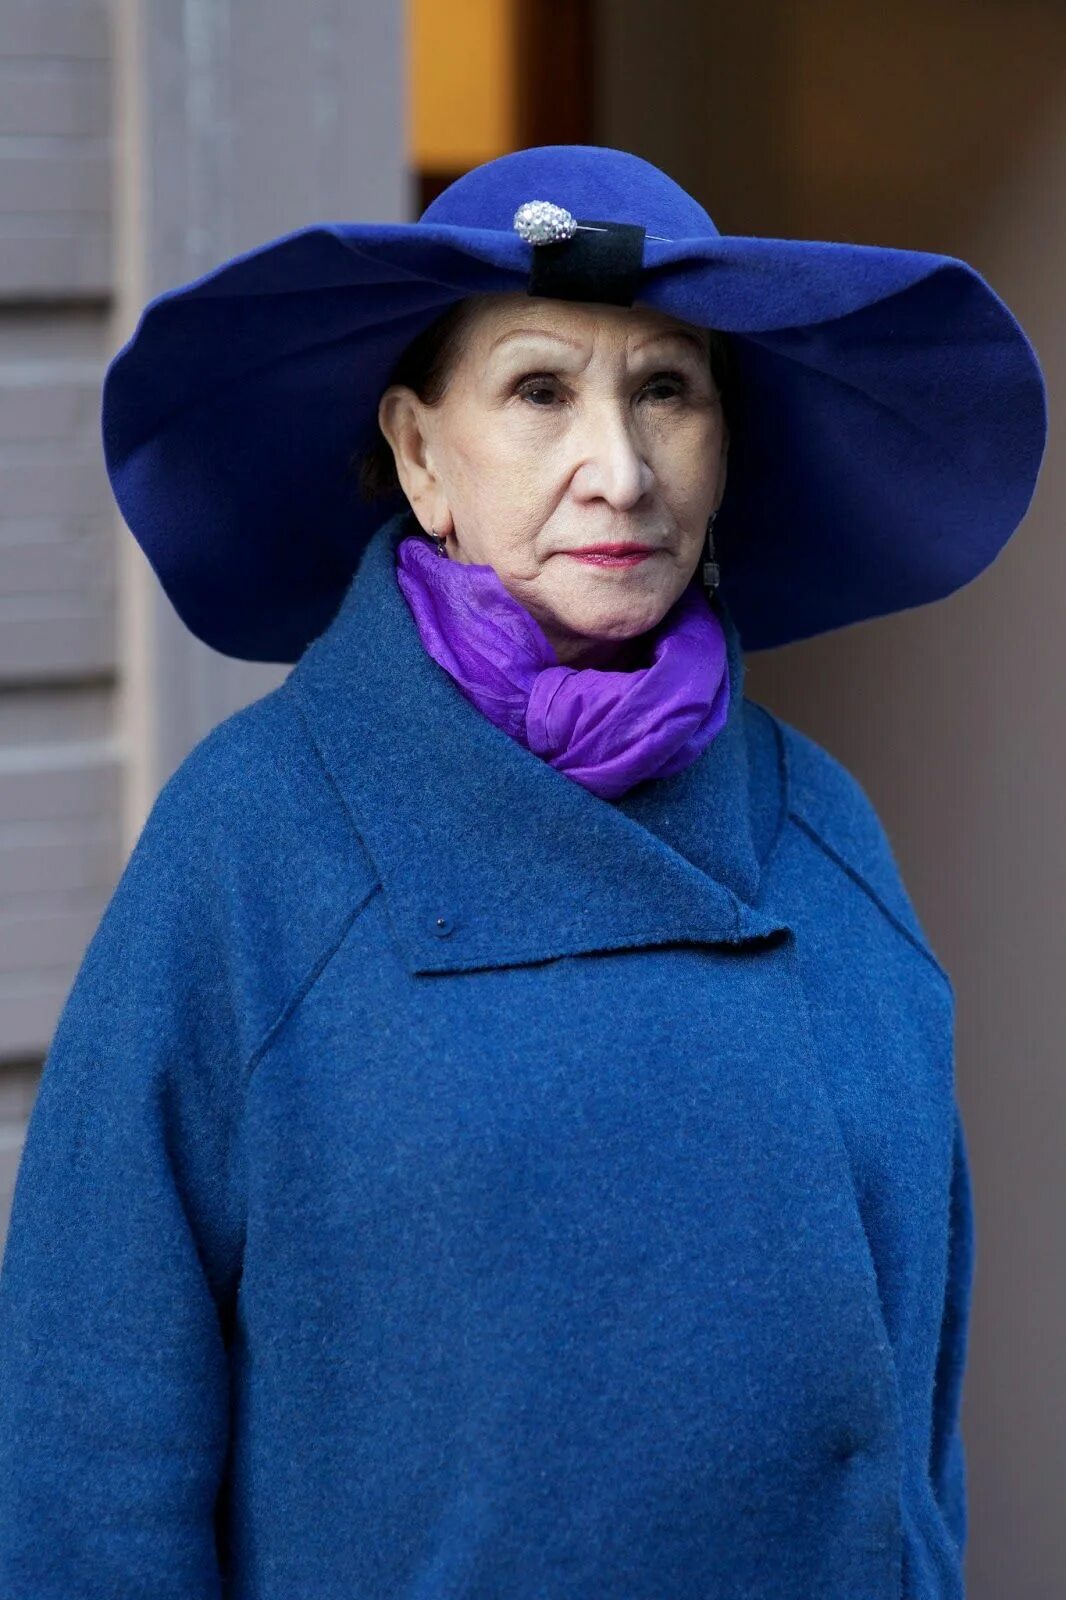 Шляпа старушки. Пожилая женщина в шляпе. Головные уборы для старушек. Старушка в шляпке. Модная бабушка в шляпке.